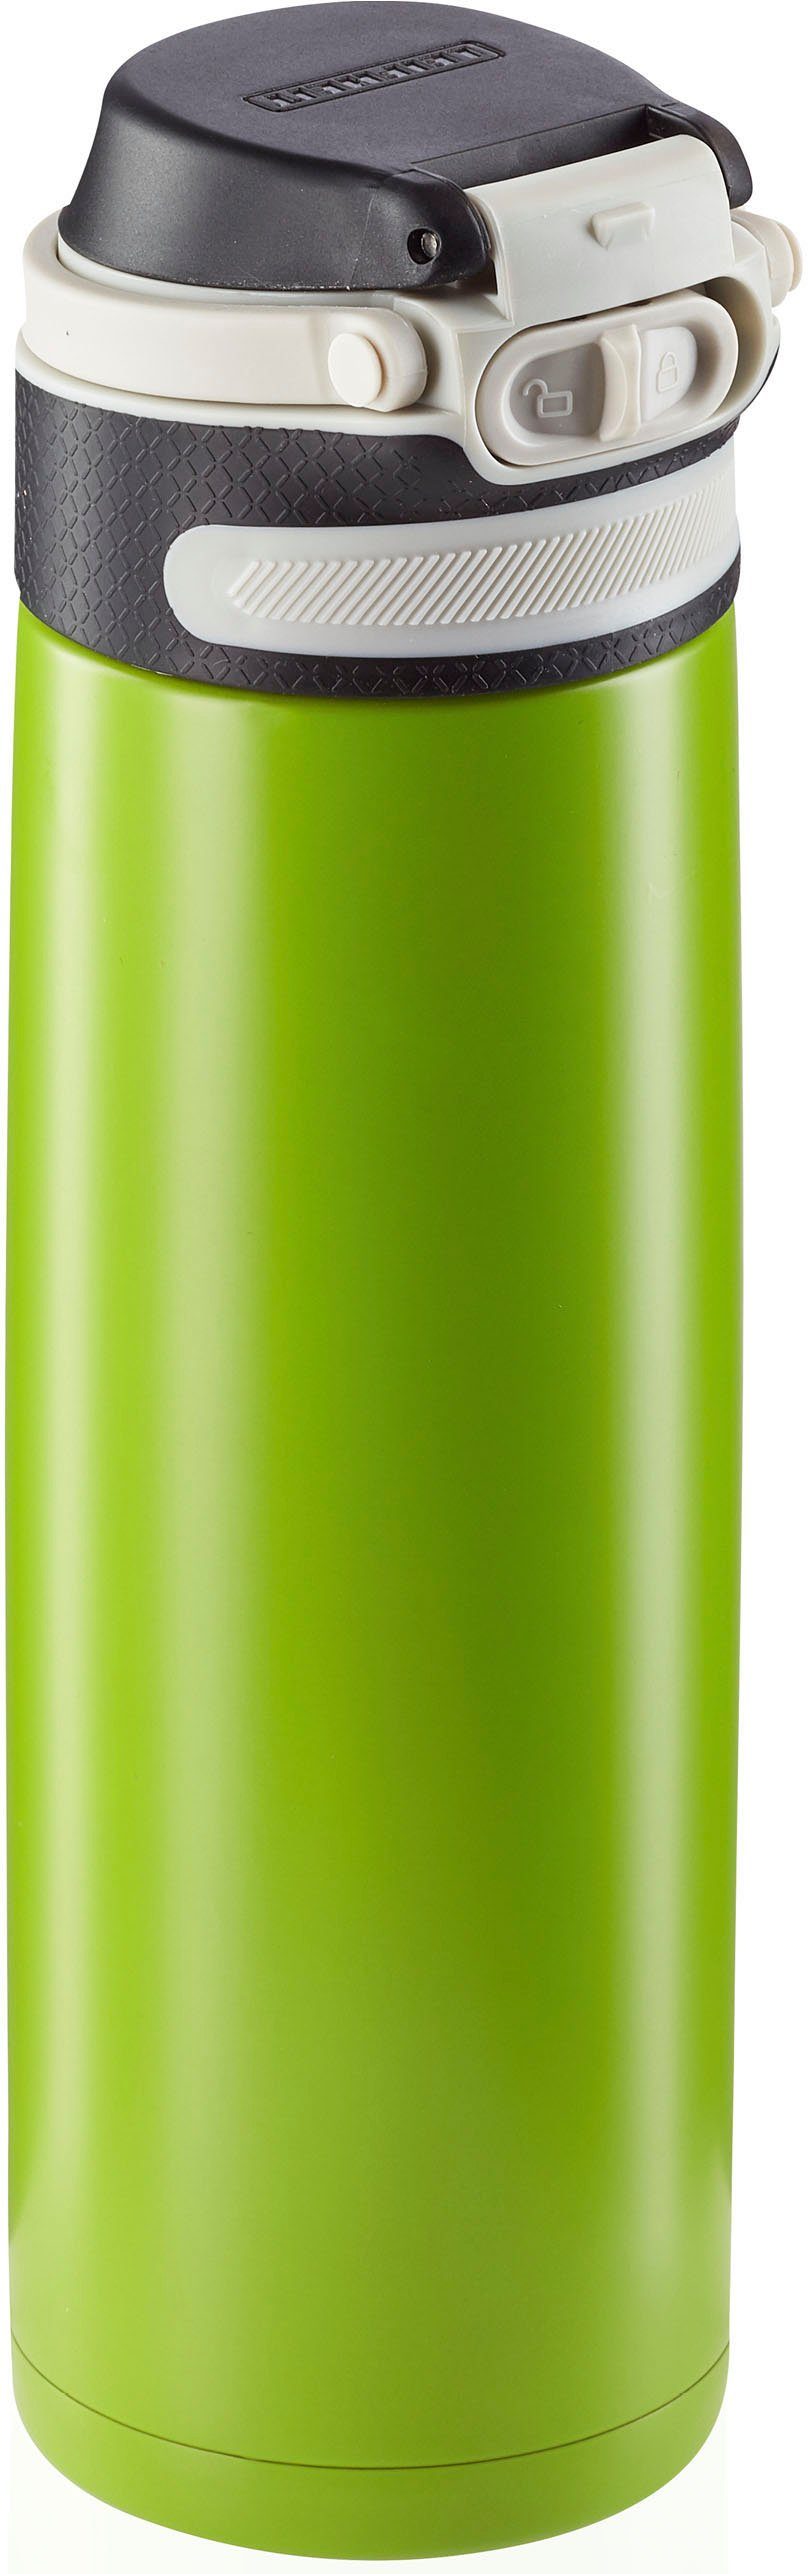 kiwi Flip, 600 Leifheit ml Thermoflasche